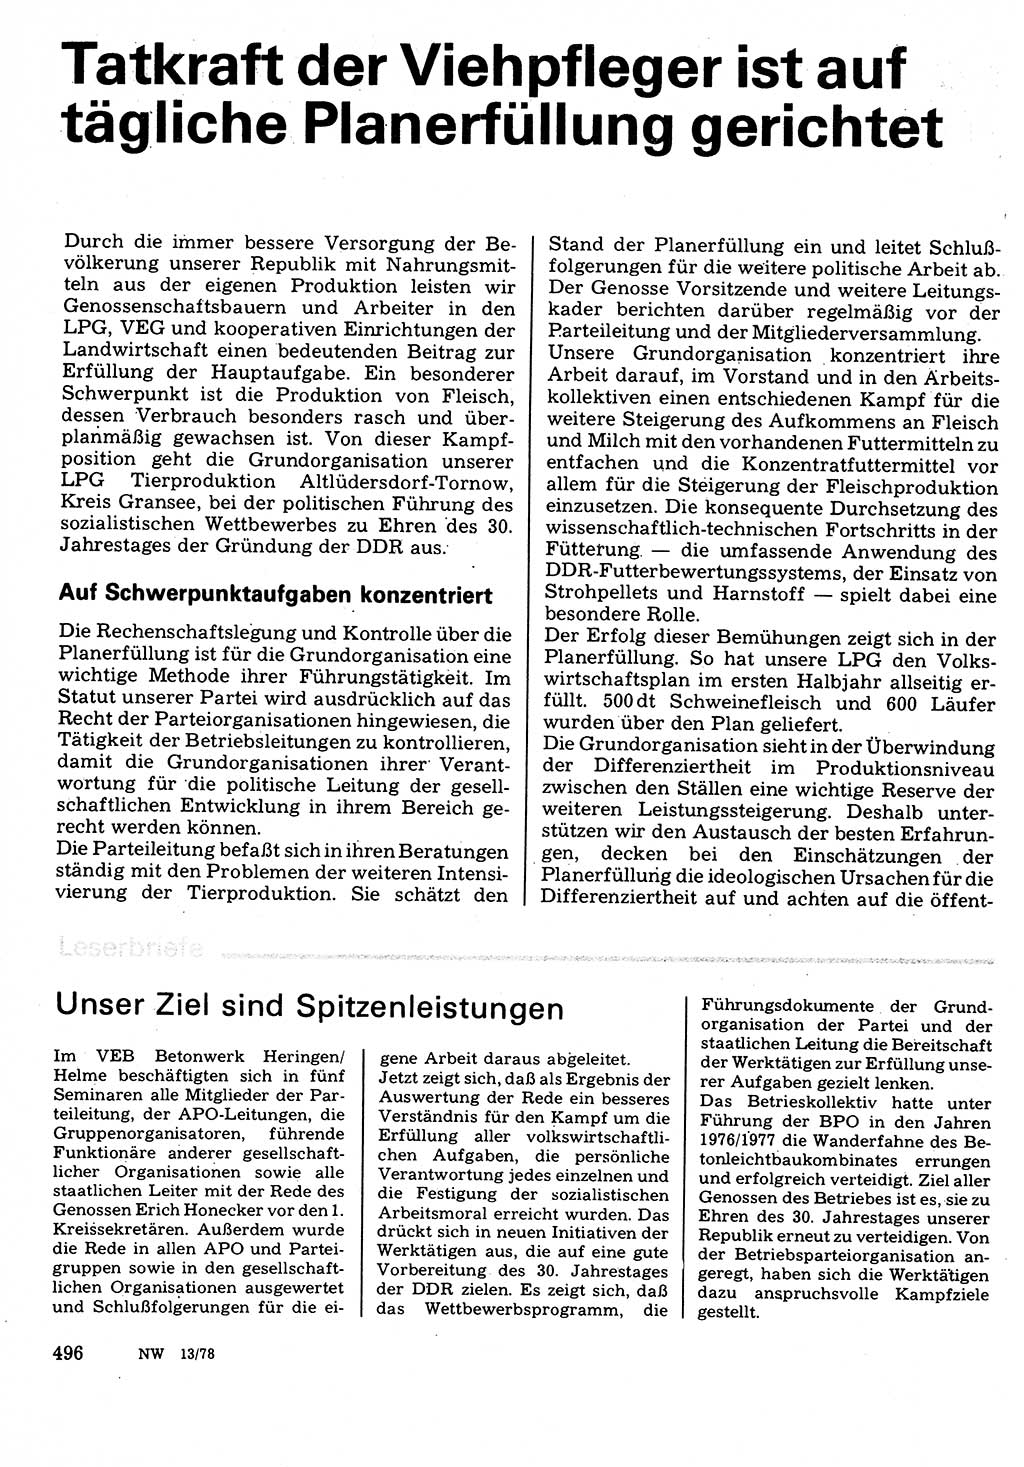 Neuer Weg (NW), Organ des Zentralkomitees (ZK) der SED (Sozialistische Einheitspartei Deutschlands) für Fragen des Parteilebens, 33. Jahrgang [Deutsche Demokratische Republik (DDR)] 1978, Seite 496 (NW ZK SED DDR 1978, S. 496)